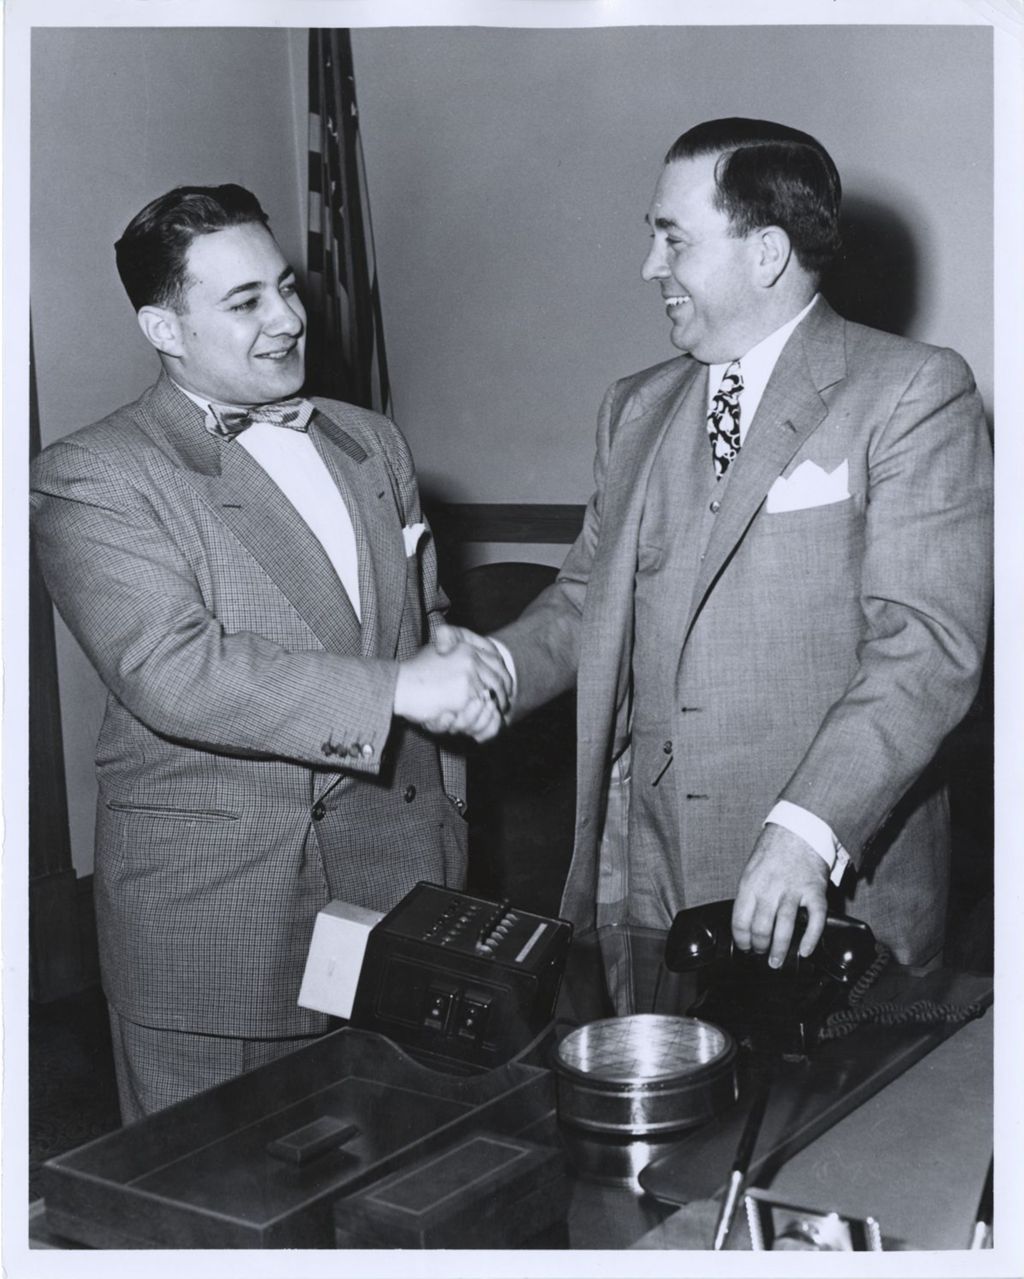 Frank Barbaro and Richard J. Daley shaking hands